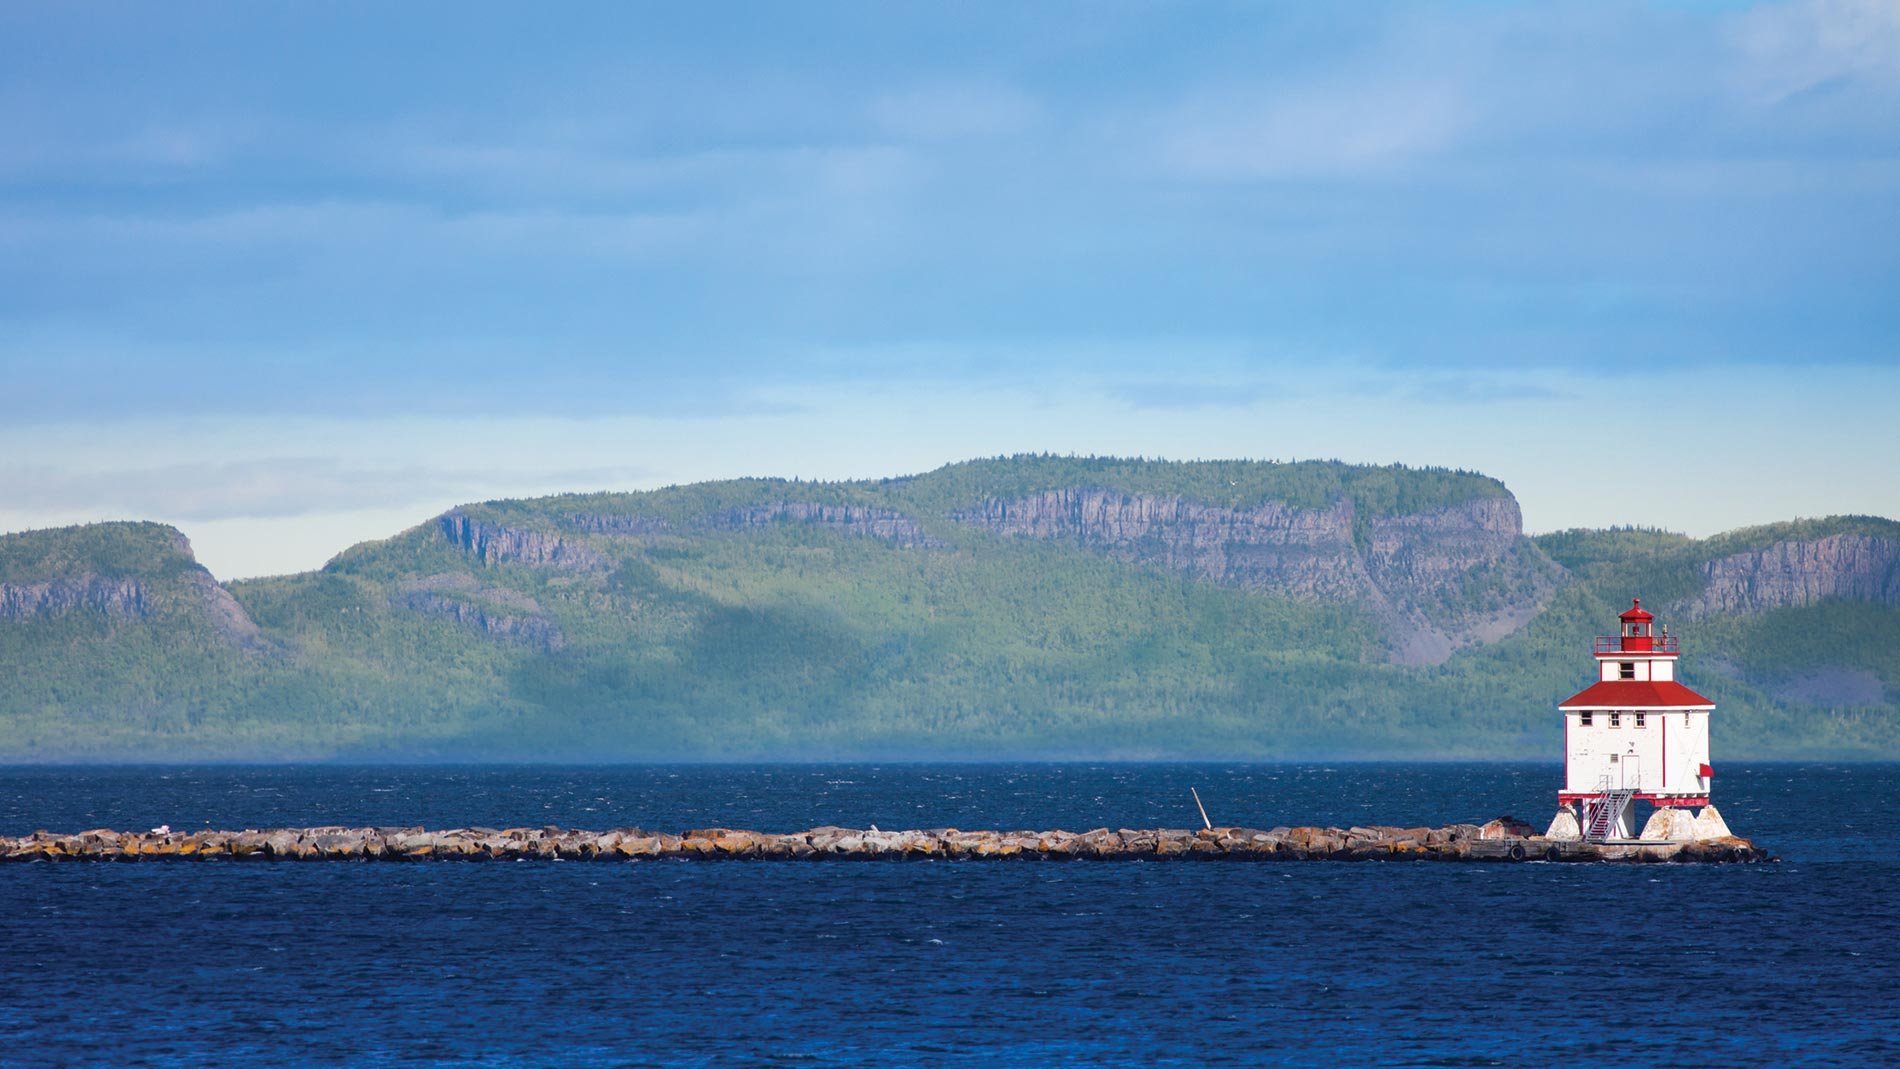 Vue d'un phare et d'une formation rocheuse en arrière-plan, photographiés depuis un lac